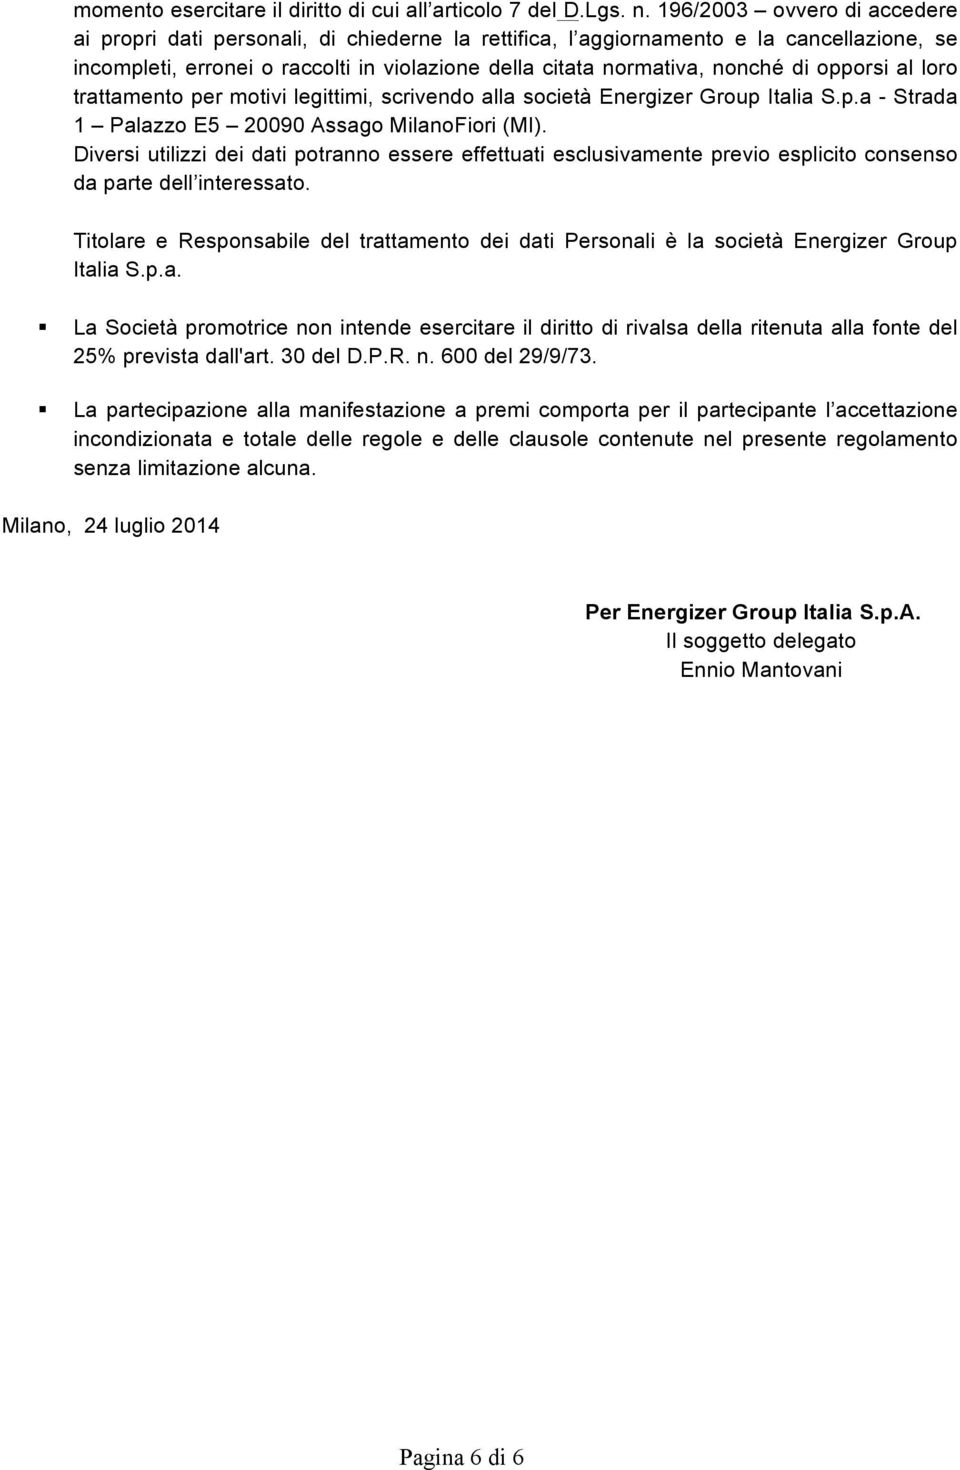 opporsi al loro trattamento per motivi legittimi, scrivendo alla società Energizer Group Italia S.p.a - Strada 1 Palazzo E5 20090 Assago MilanoFiori (MI).